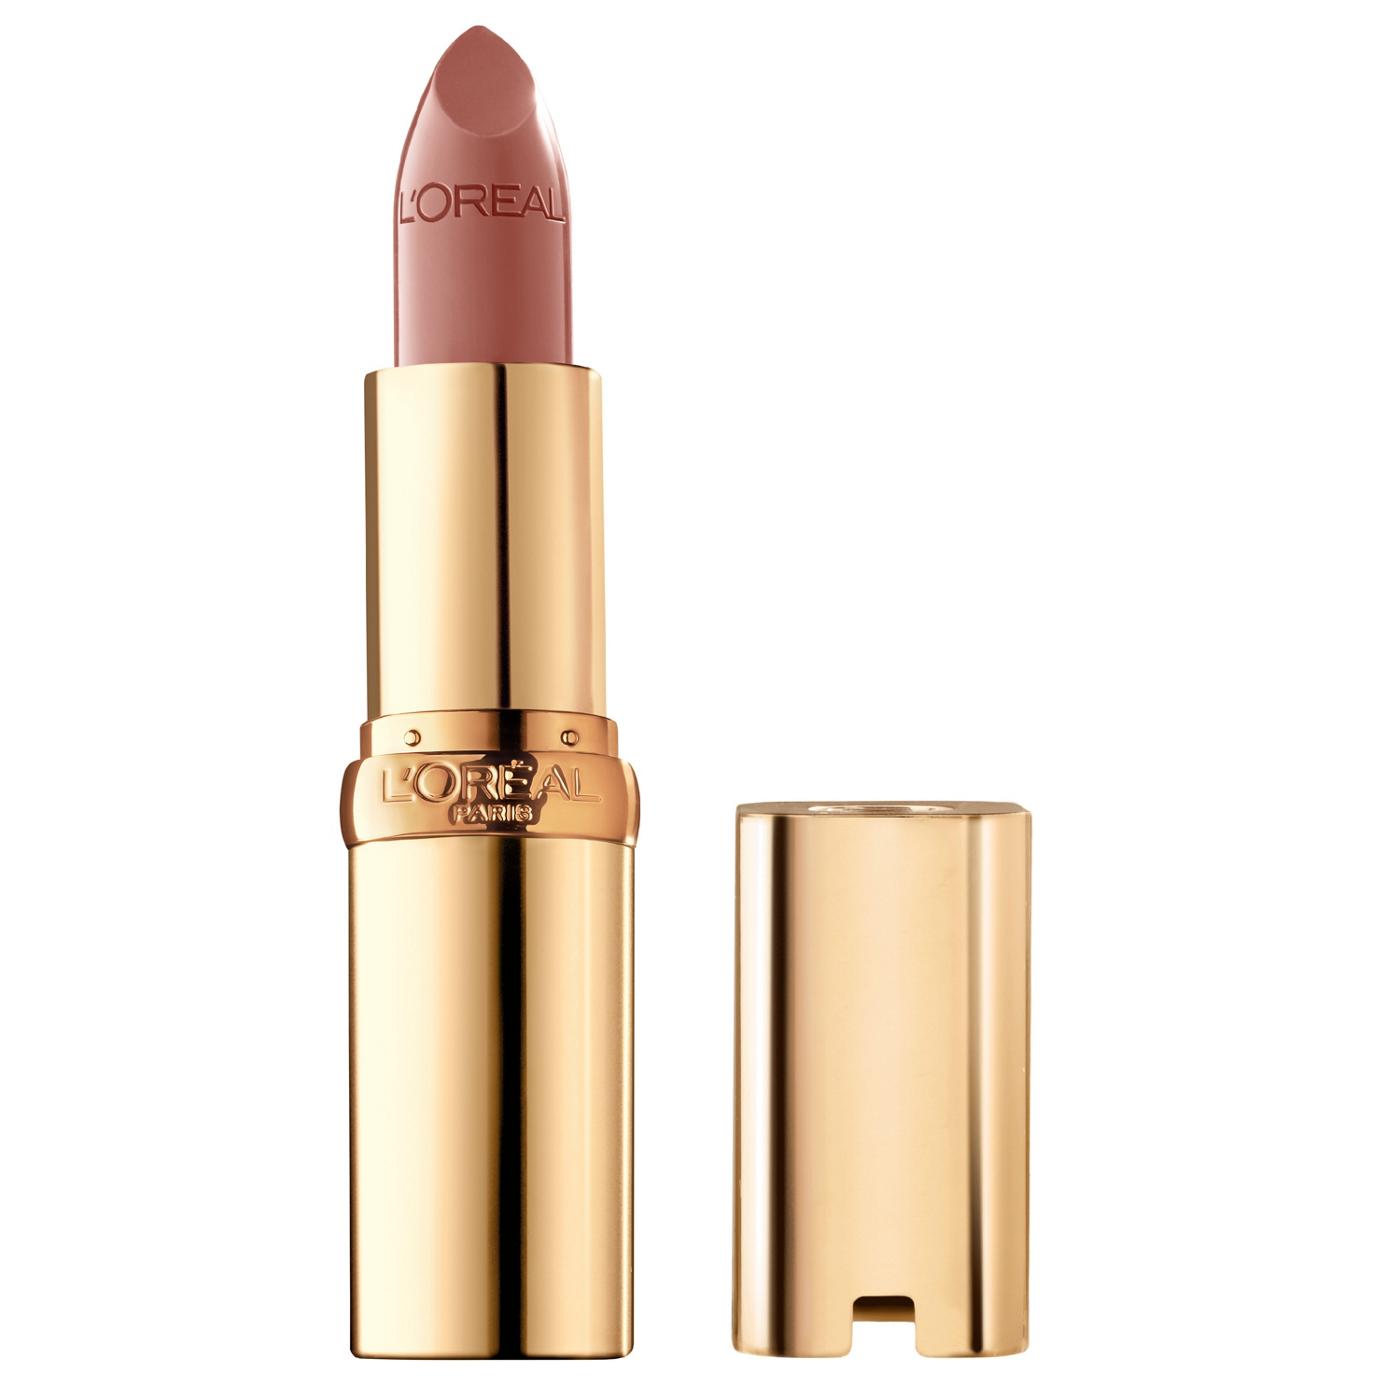 L'Oréal Paris Colour Riche Original Satin Lipstick - Fairest Nude; image 1 of 5